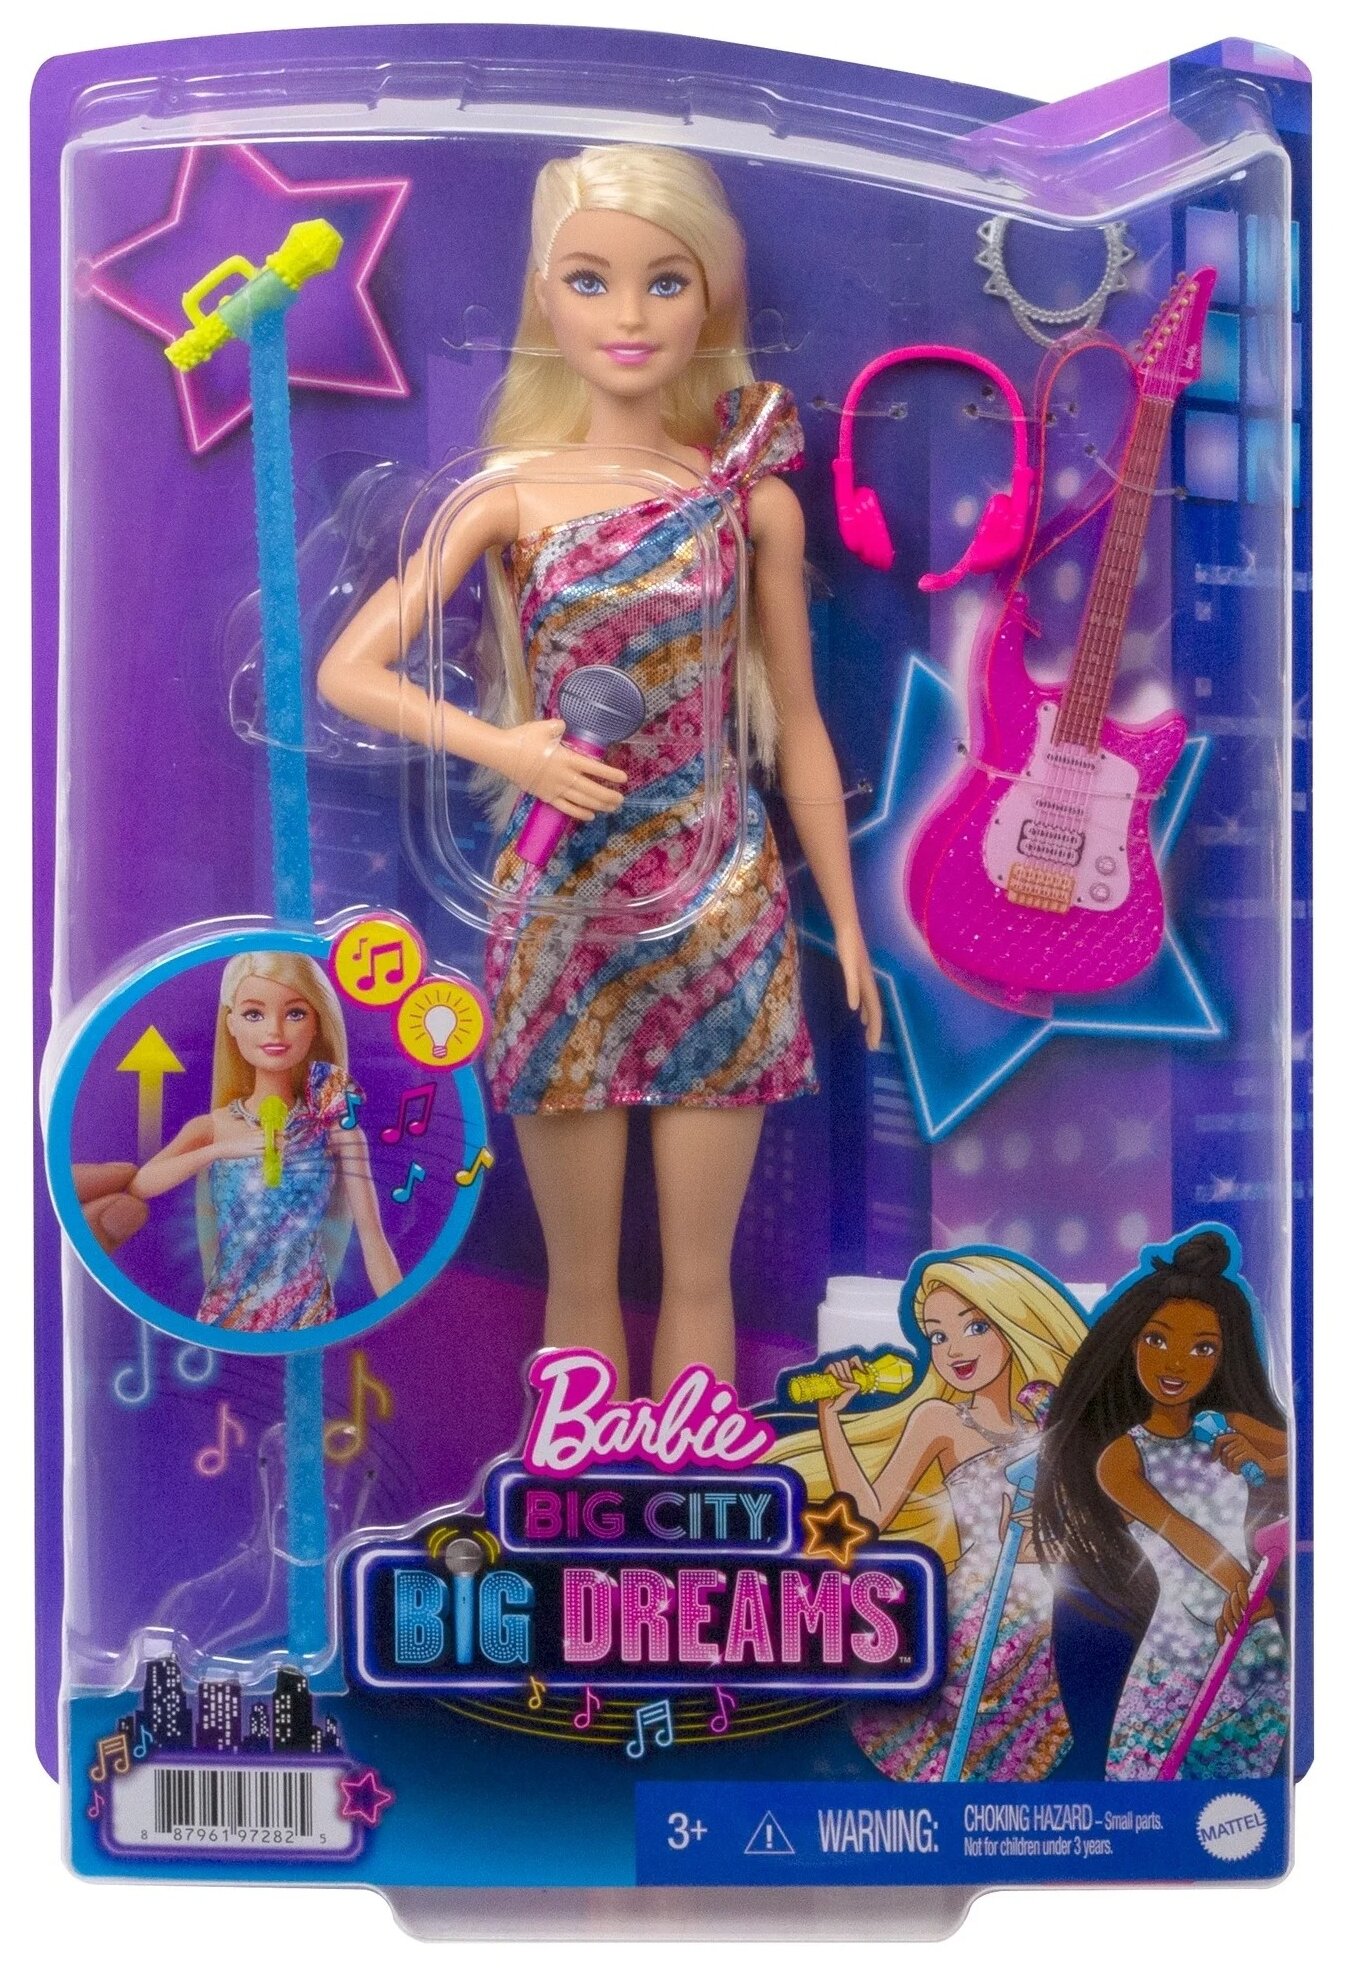 Barbie Кукла Большой город Большие мечты "Первая солистка" - фото №3